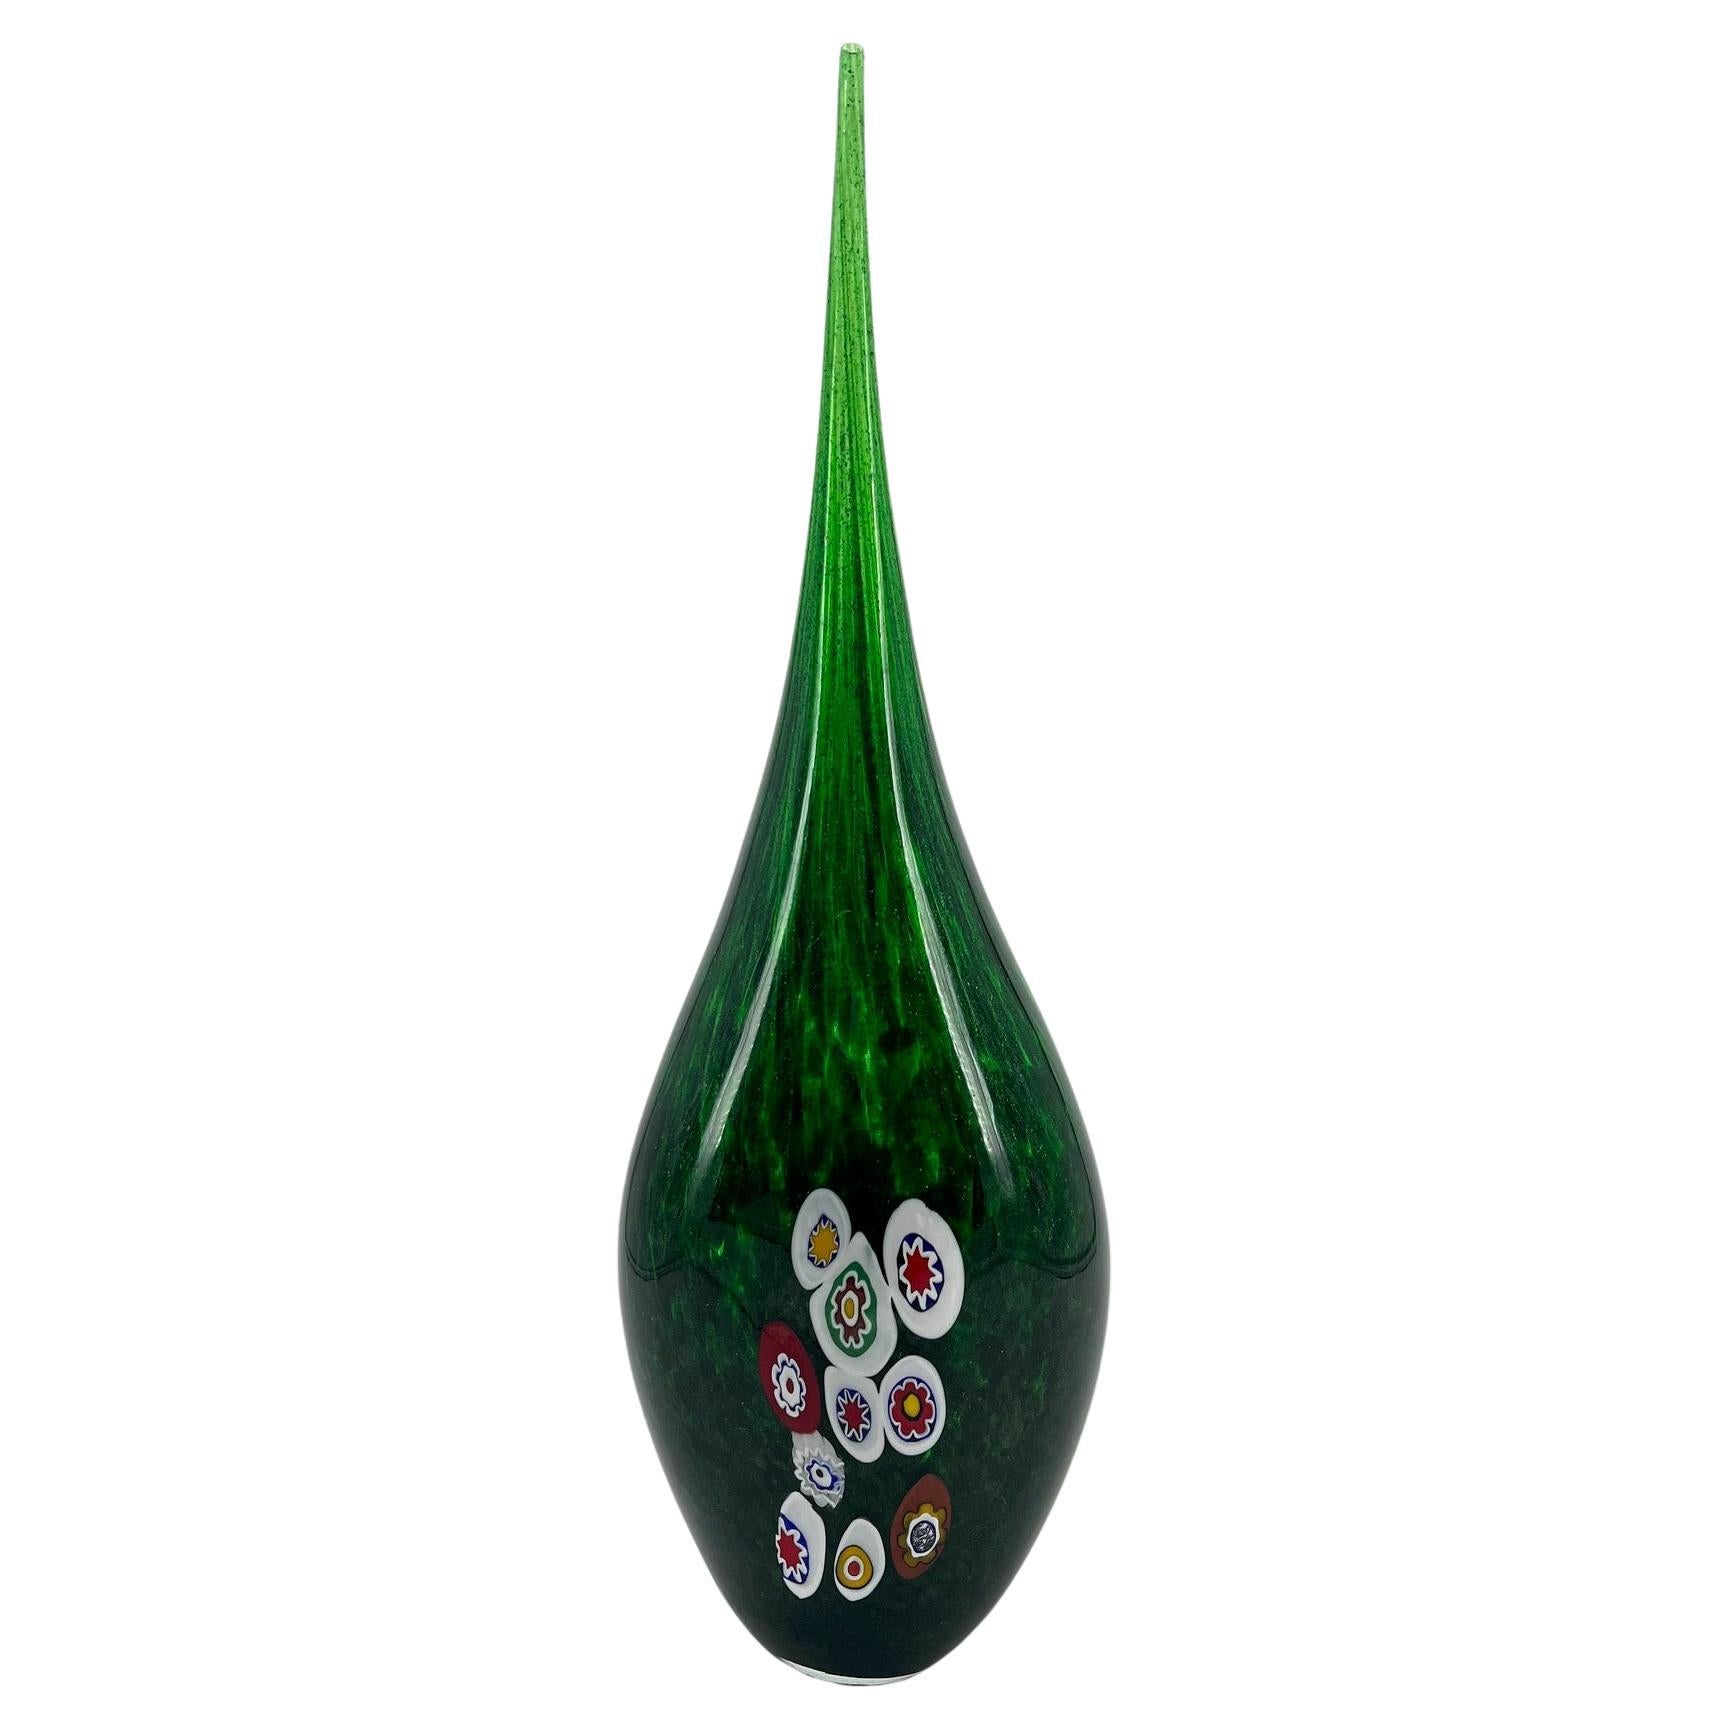 1295 Murano Hand made Green Avventurina Murrine Vase hauteur 25.2 Inches